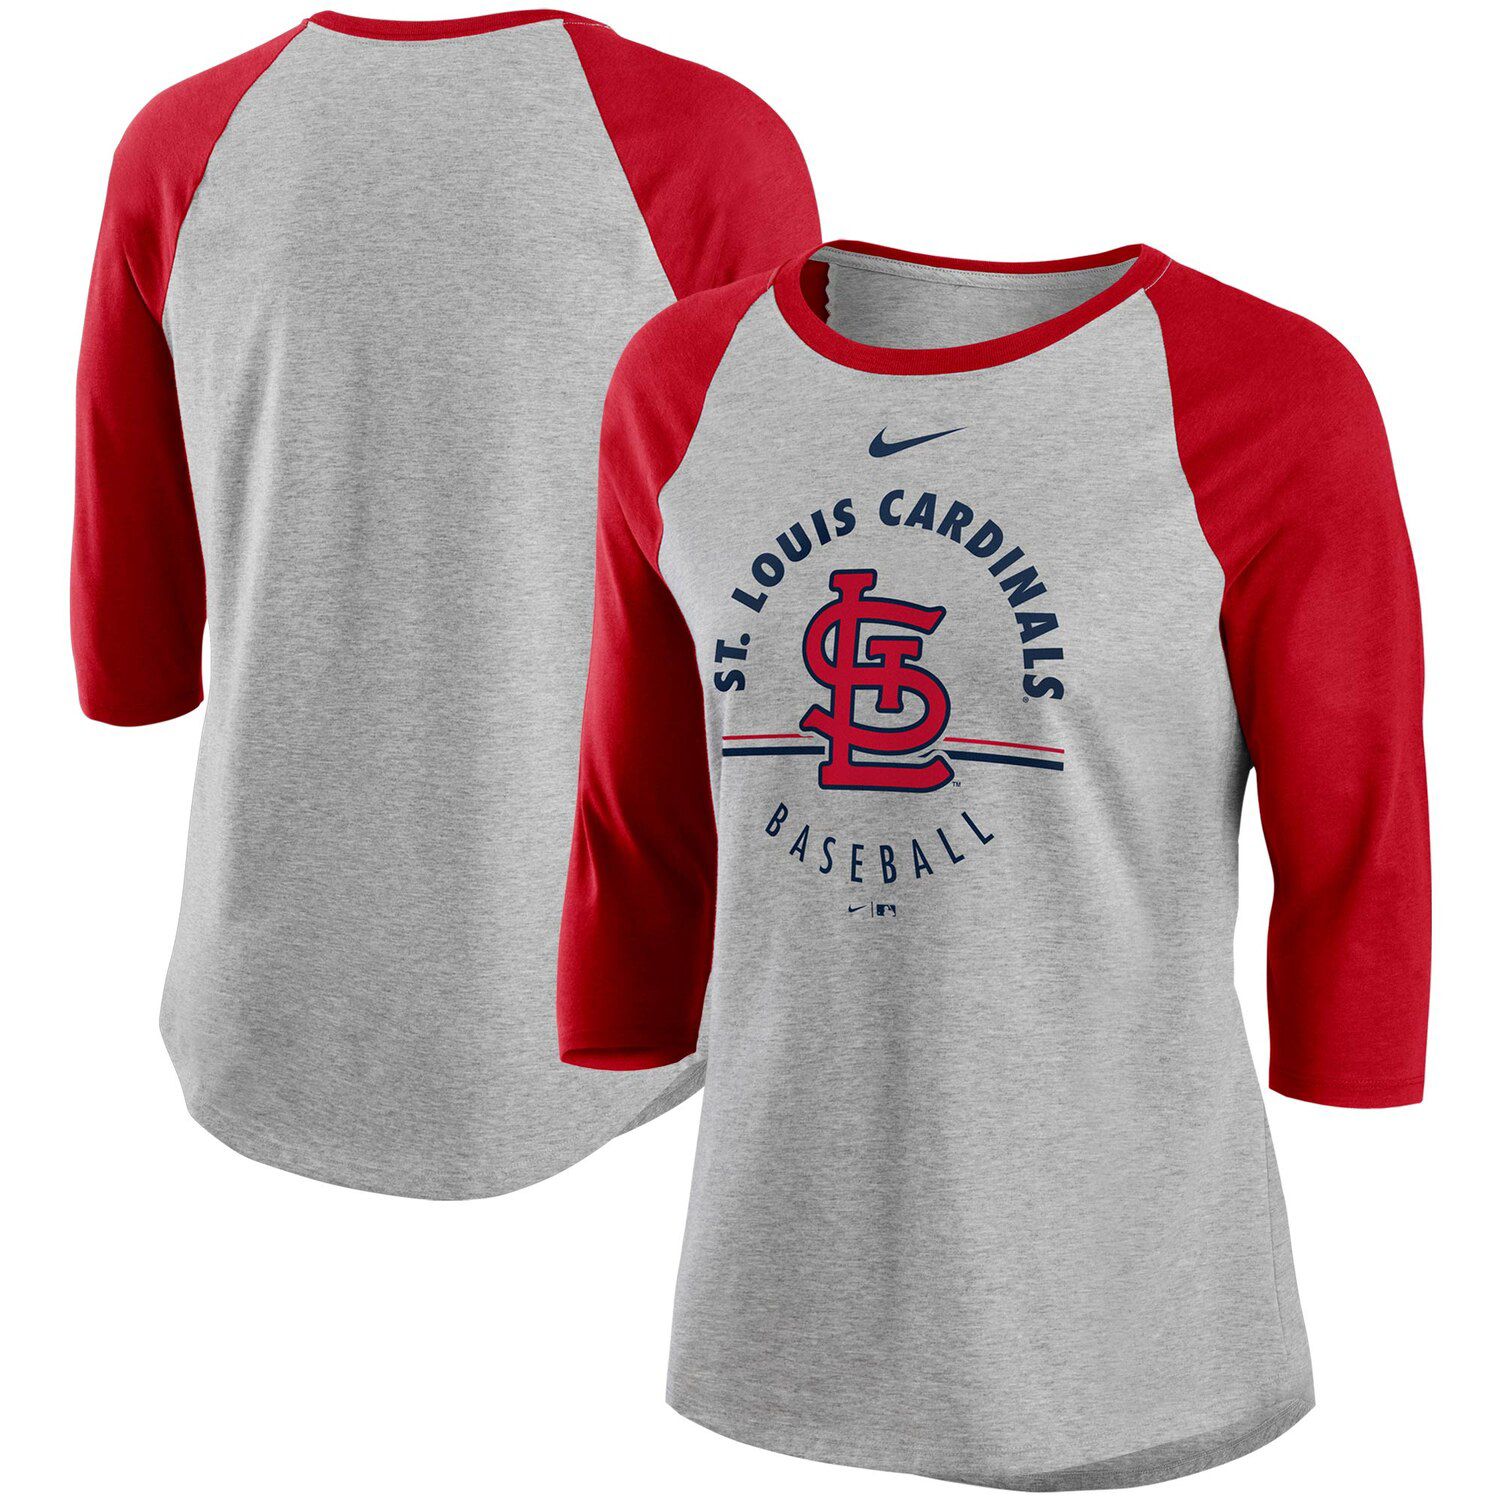 cardinals jersey for women